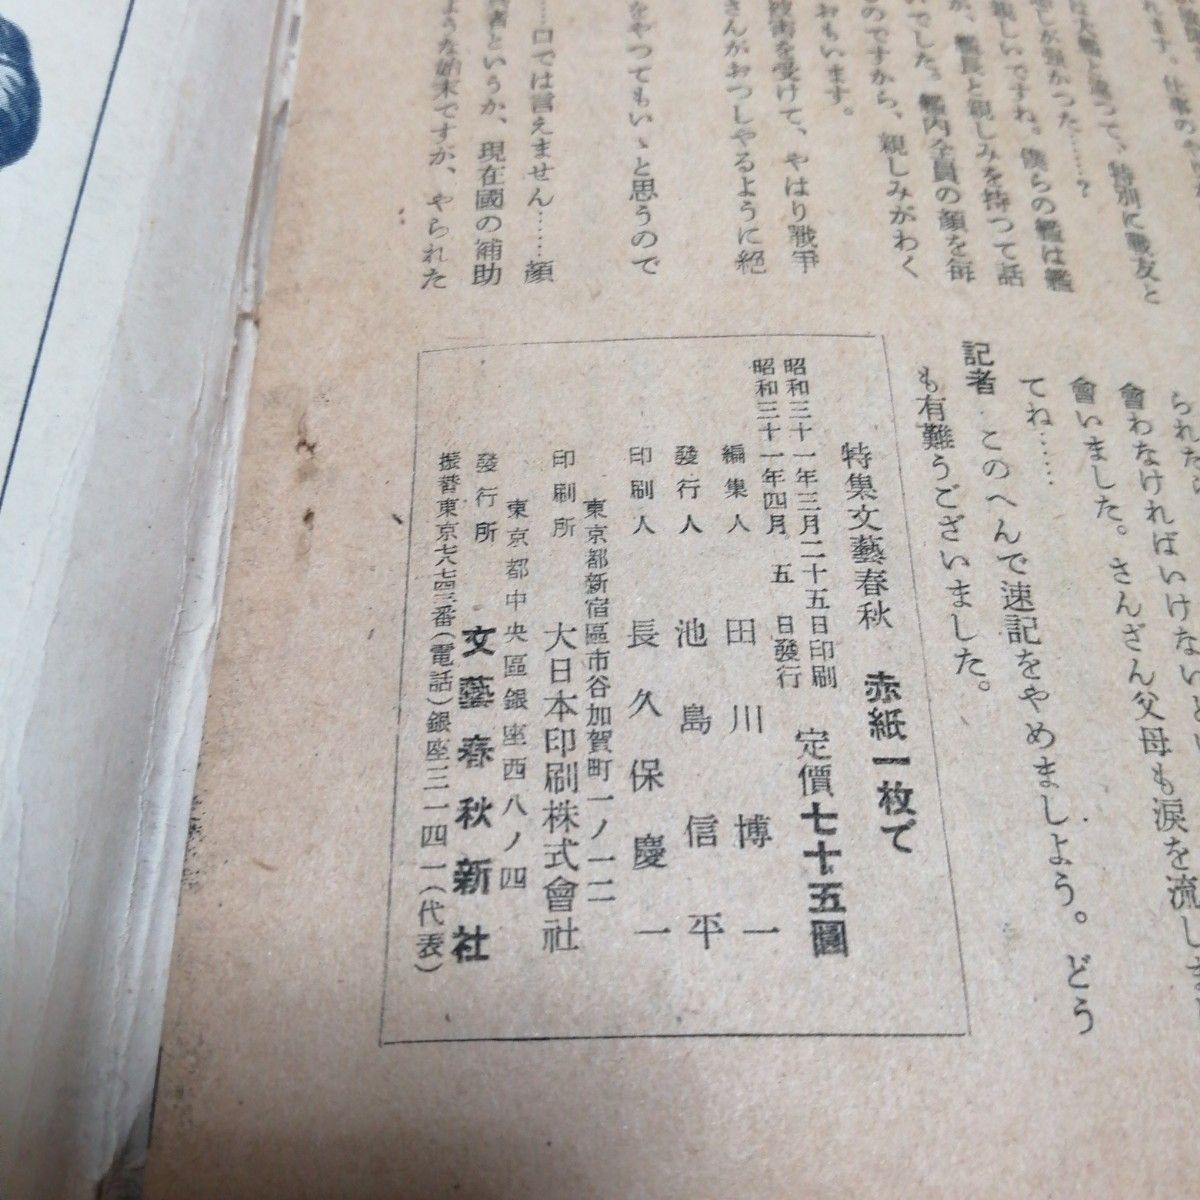  赤紙一枚で 特集 文藝春秋 昭和31年 4月